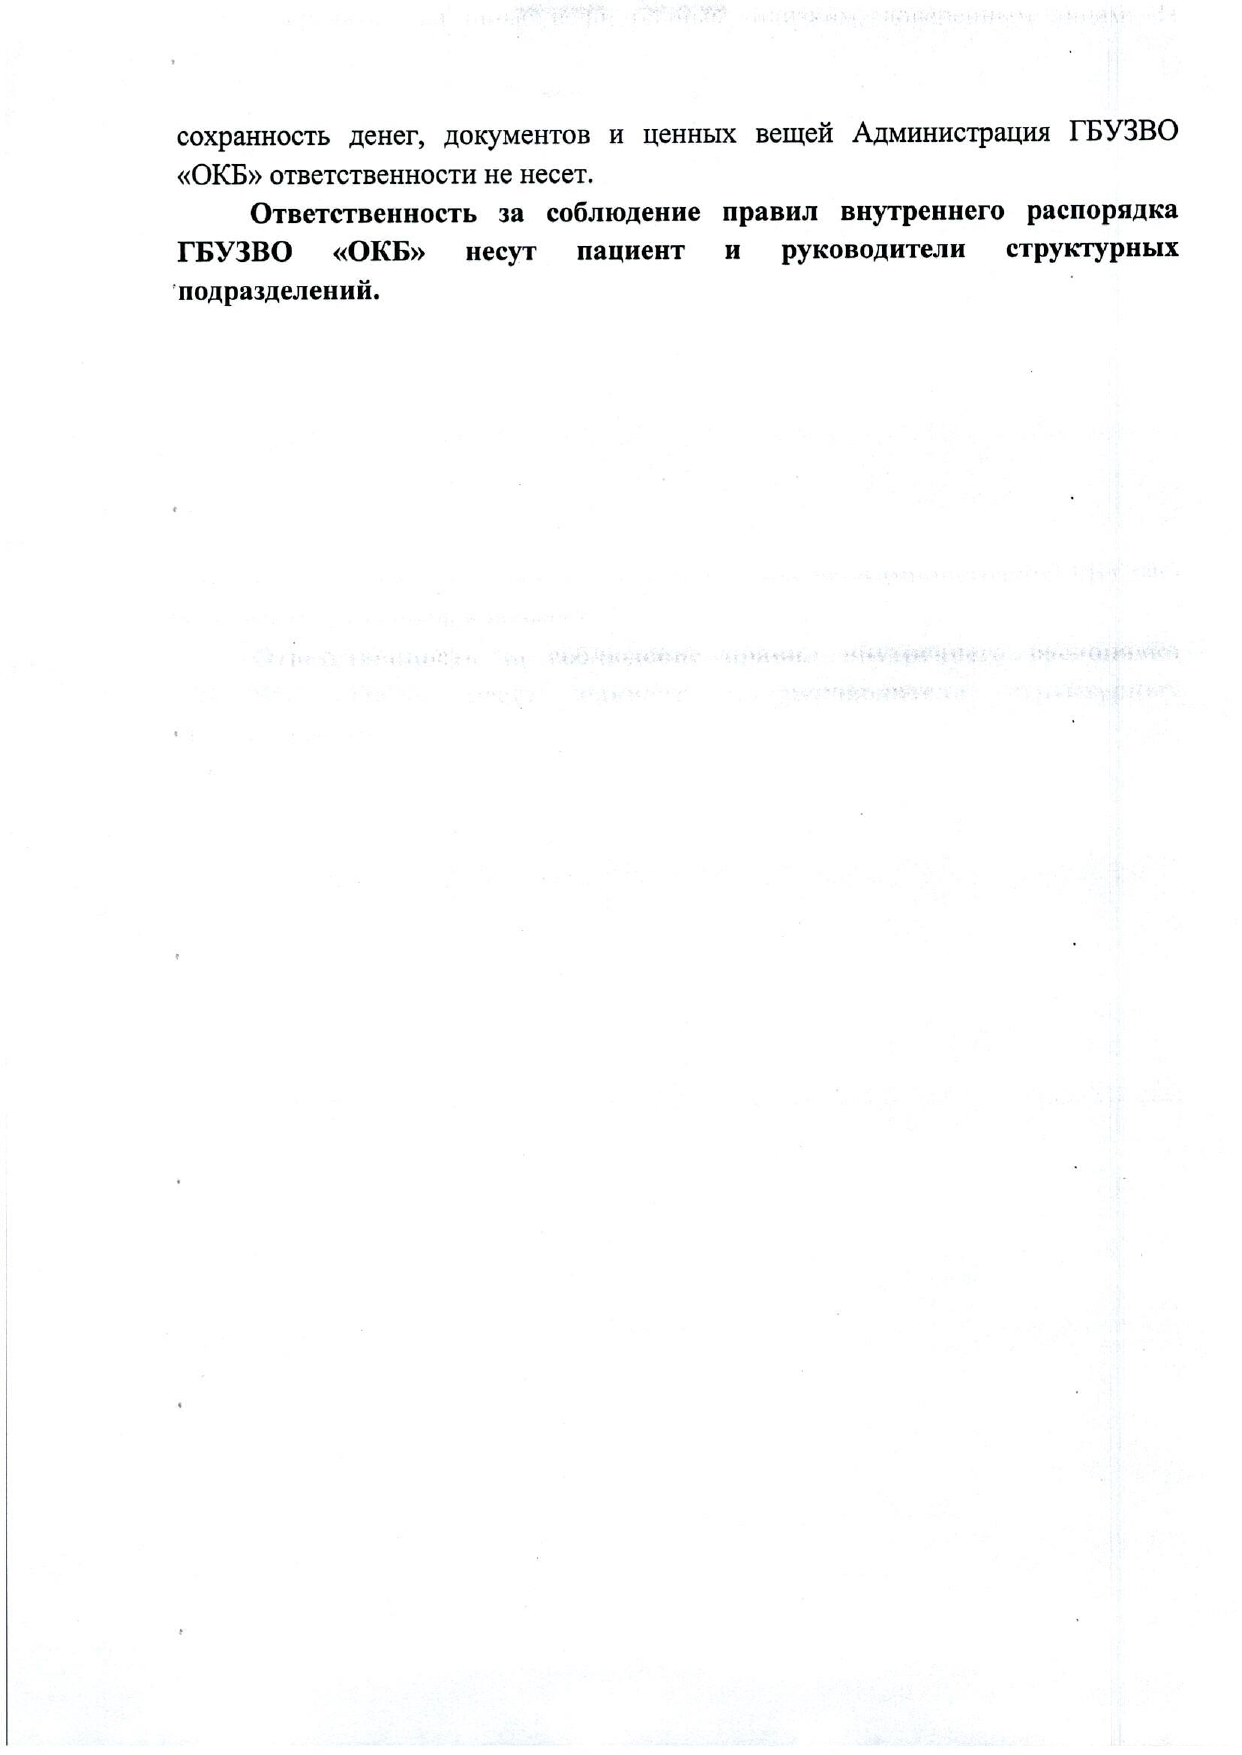 ПРАВИЛА внутреннего распорядка в стационарных подразделениях ГБУЗВО «ОКБ», стр.7 из 13